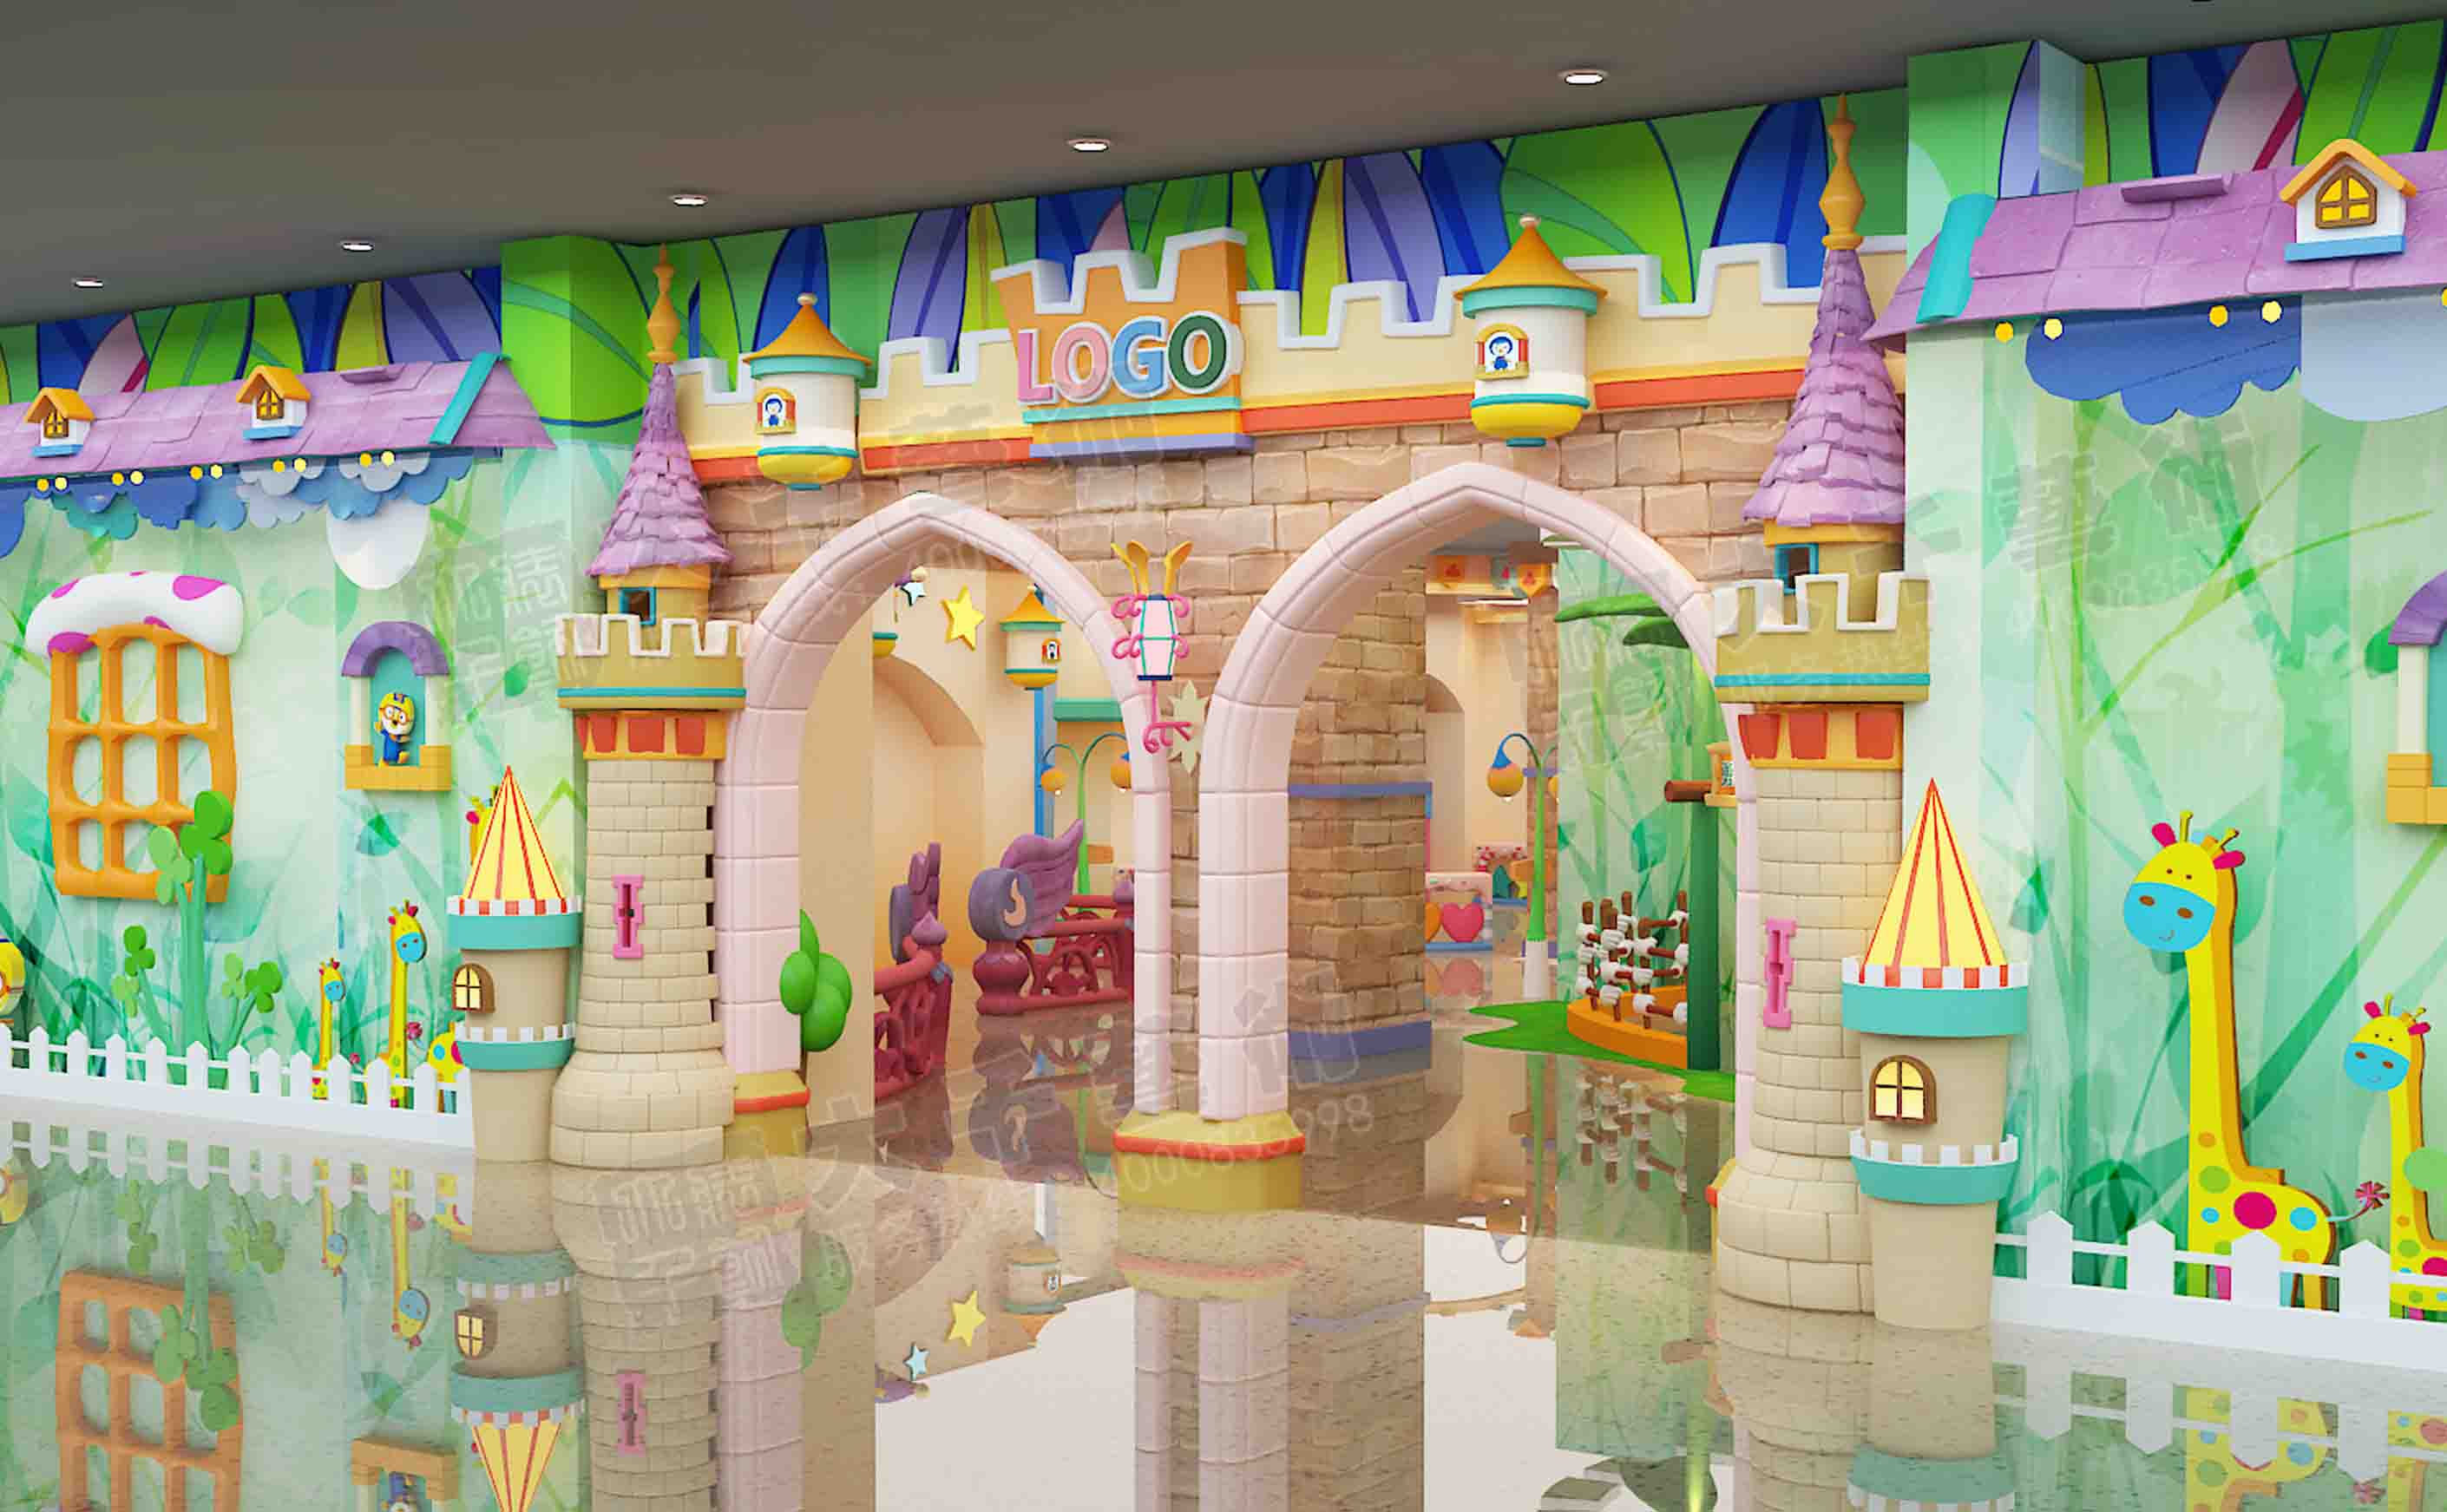 广州大千装饰工程有限公司——您身边的儿童乐园装修及广州儿童